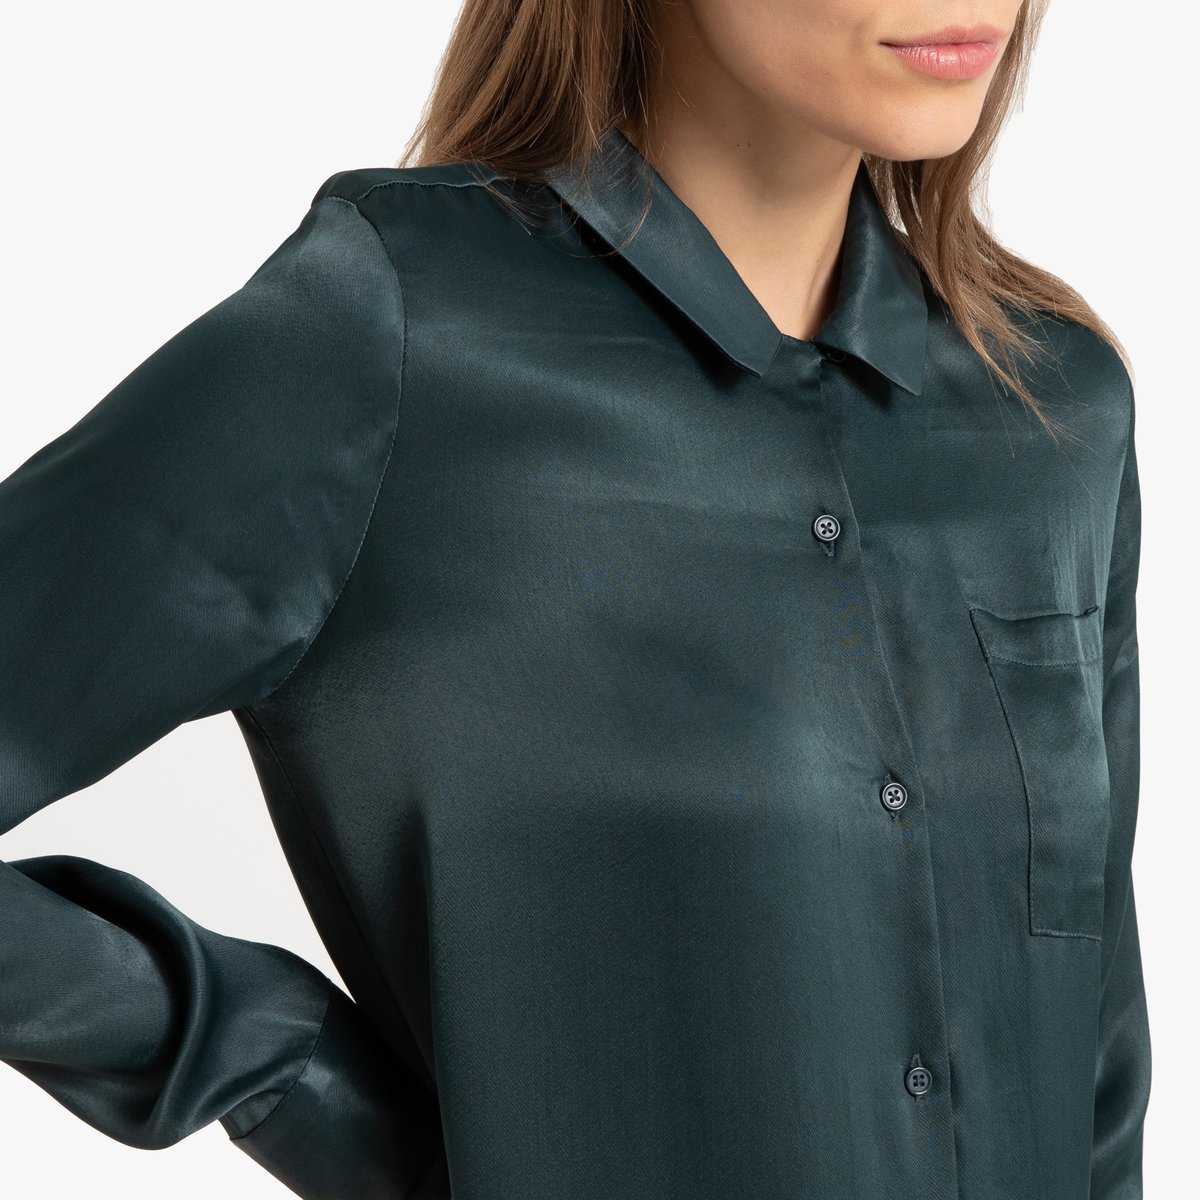 Платье-рубашка La Redoute Миди с длинными рукавами 42 (FR) - 48 (RUS) зеленый, размер 42 (FR) - 48 (RUS) Миди с длинными рукавами 42 (FR) - 48 (RUS) зеленый - фото 4